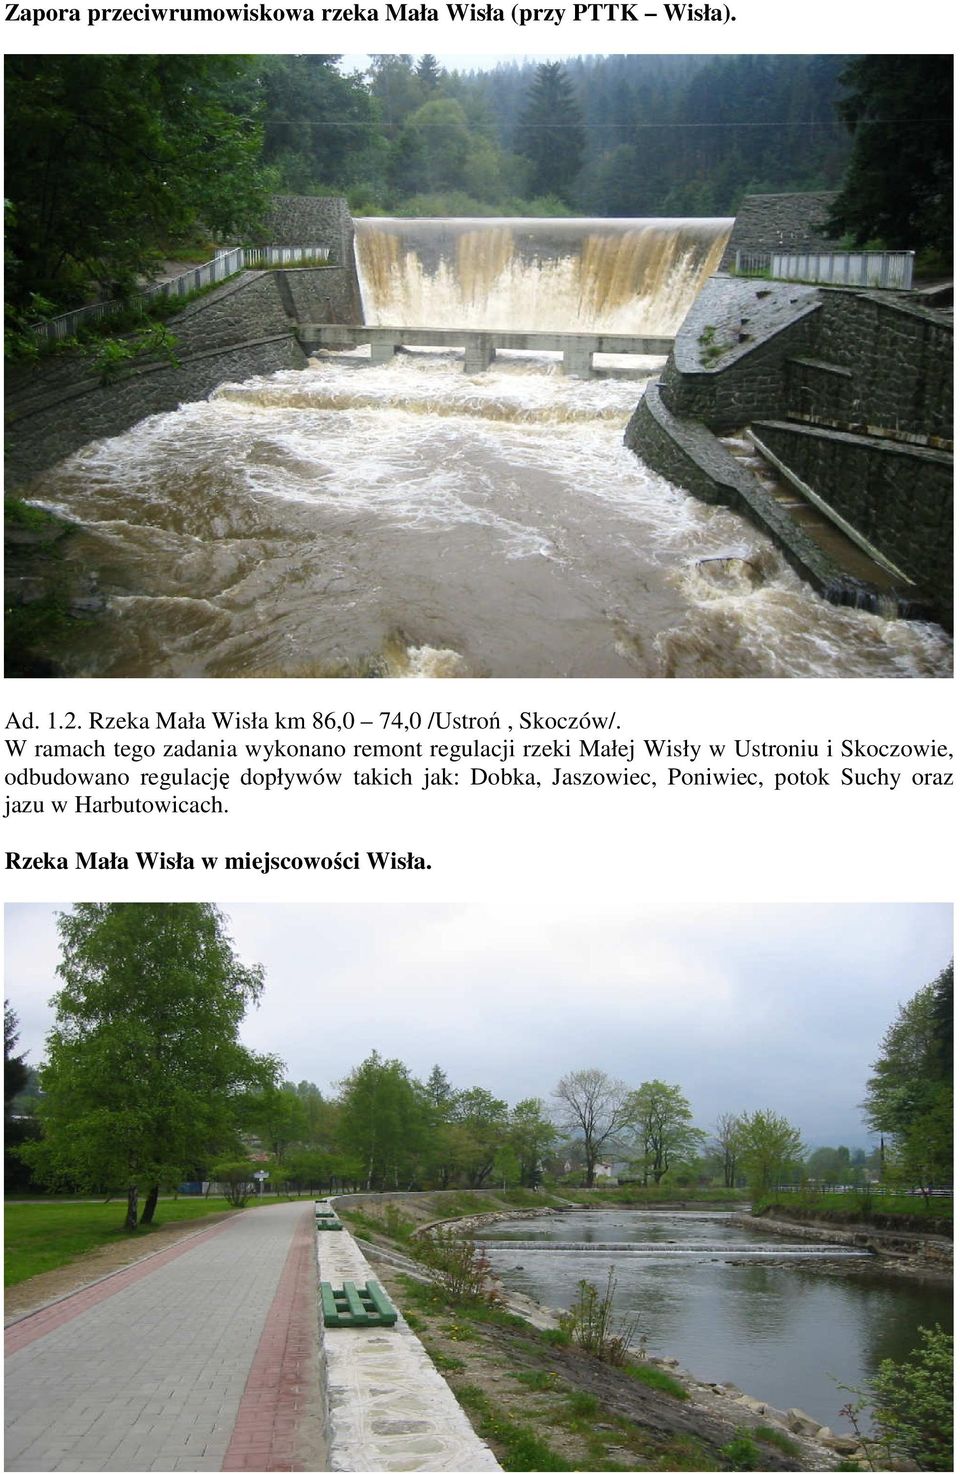 W ramach tego zadania wykonano remont regulacji rzeki Małej Wisły w Ustroniu i Skoczowie,